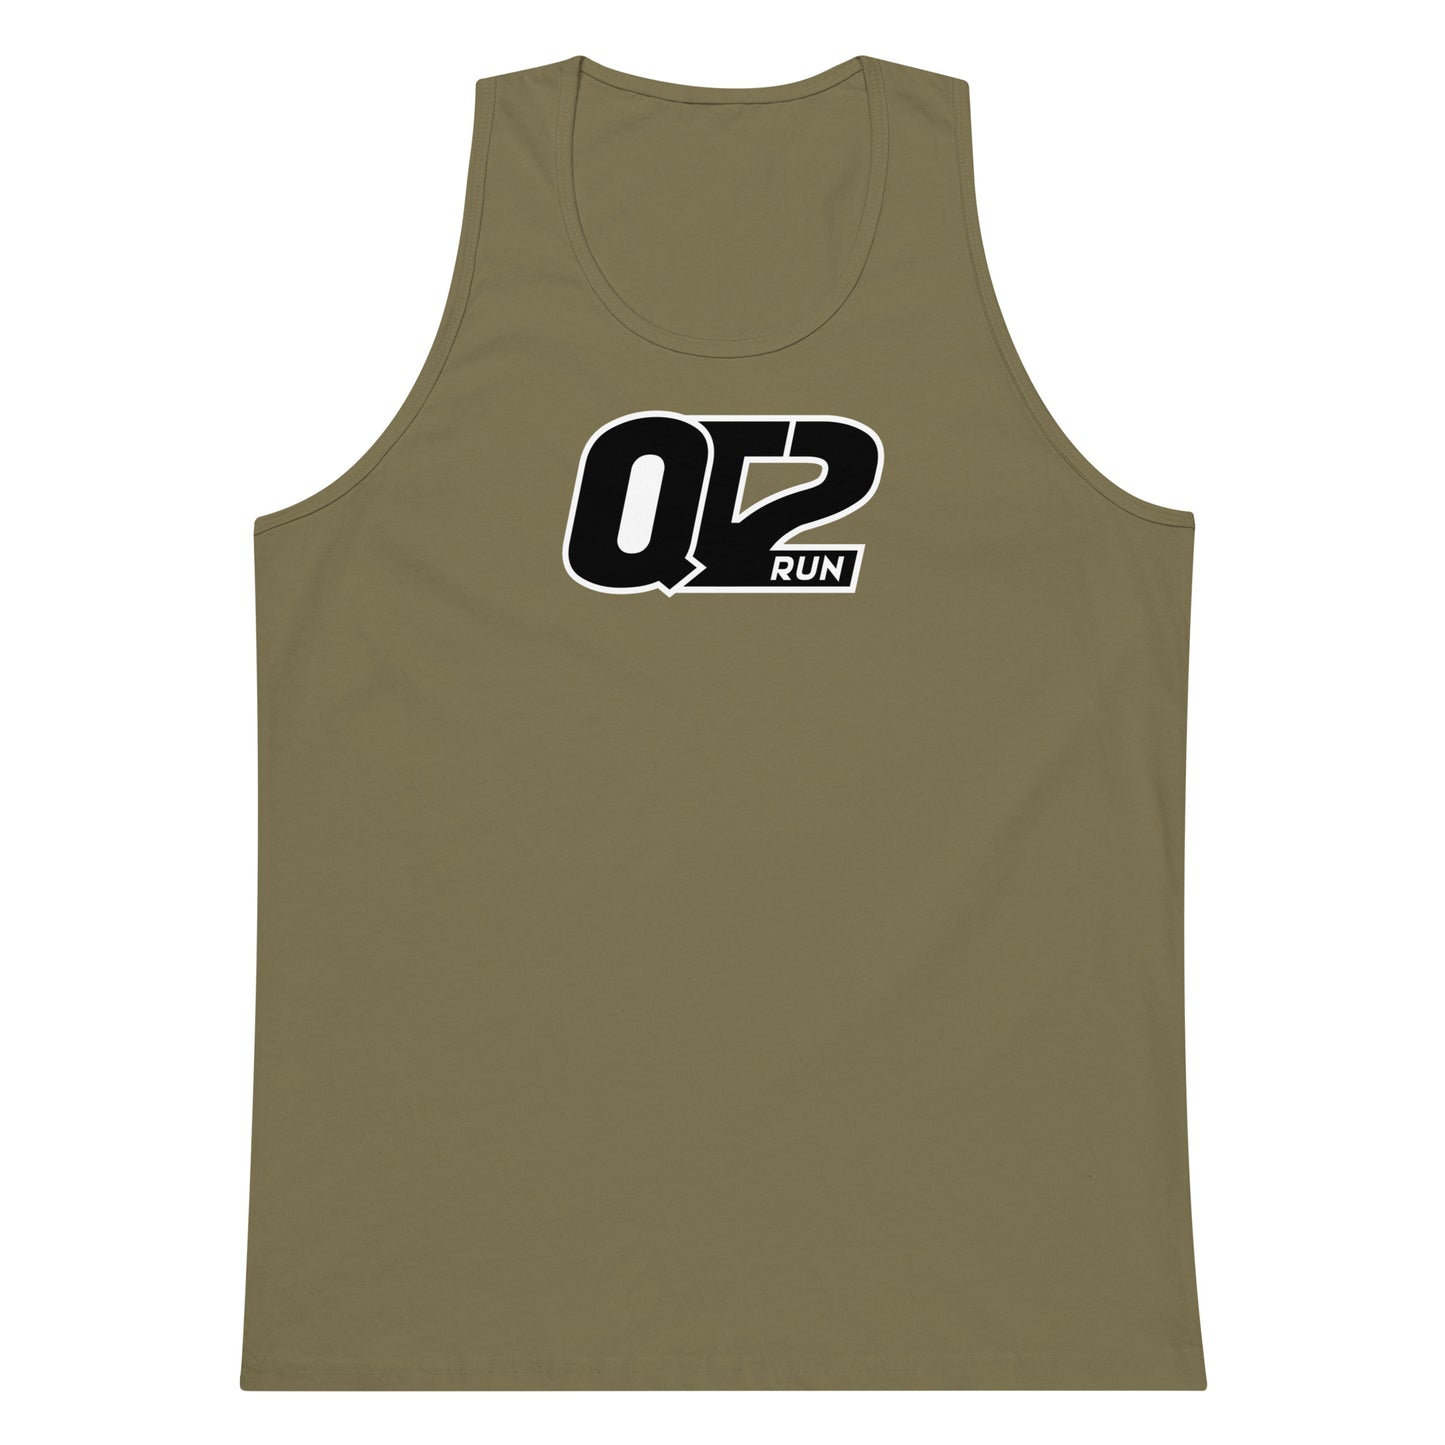 QT2 Run TRF Tank Top - Unisex